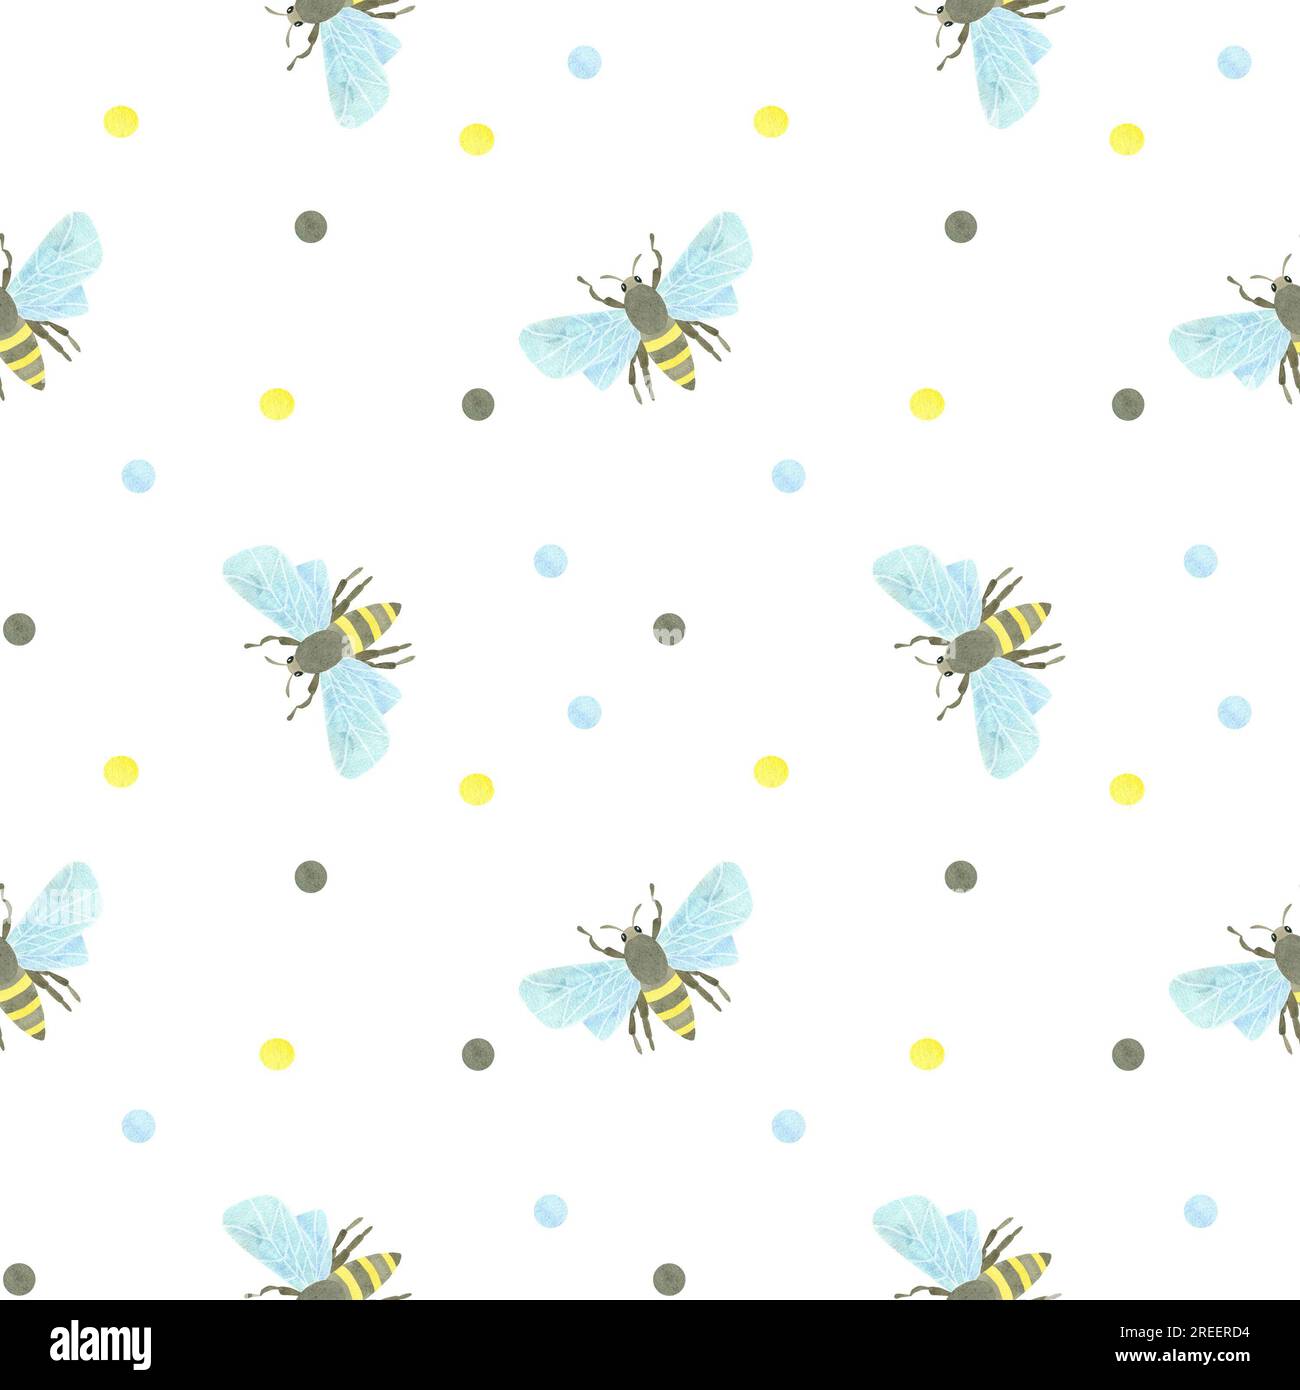 Nahtloses Muster mit Honigbienen und mehrfarbigen Aquarellflecken auf weißem Hintergrund. Aquarelldarstellung. EIN SATZ TIERGESICHTER. Geeignet für Stockfoto